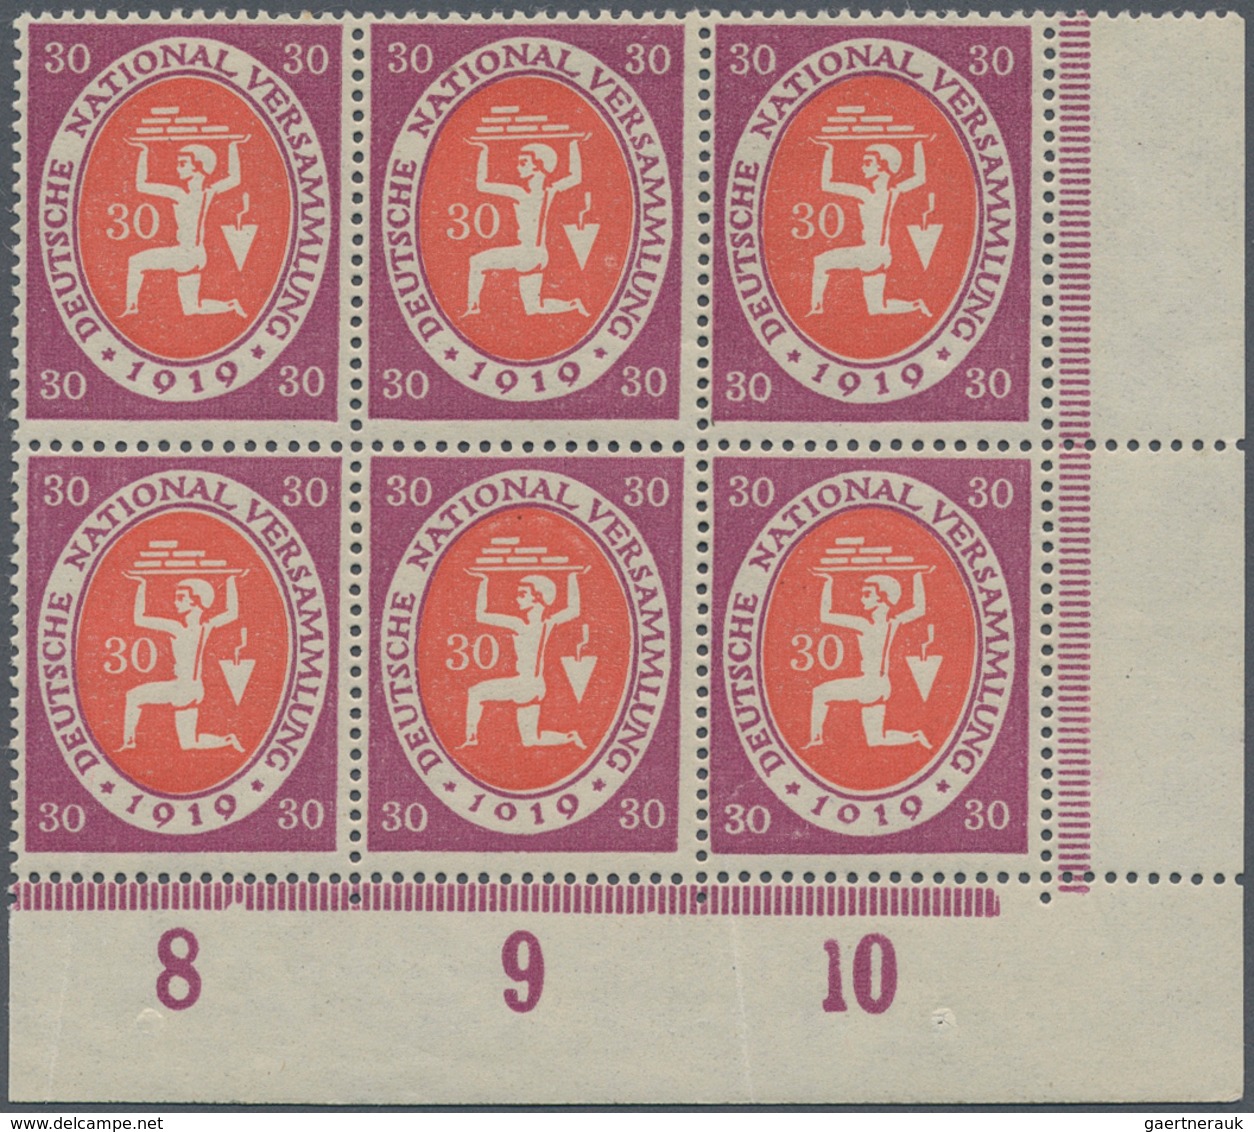 17967 Deutsches Reich - Inflation: 1919, 30 Pf. Nationalversammlung, Postfrischer ER-Sechserblock Unten Re - Covers & Documents